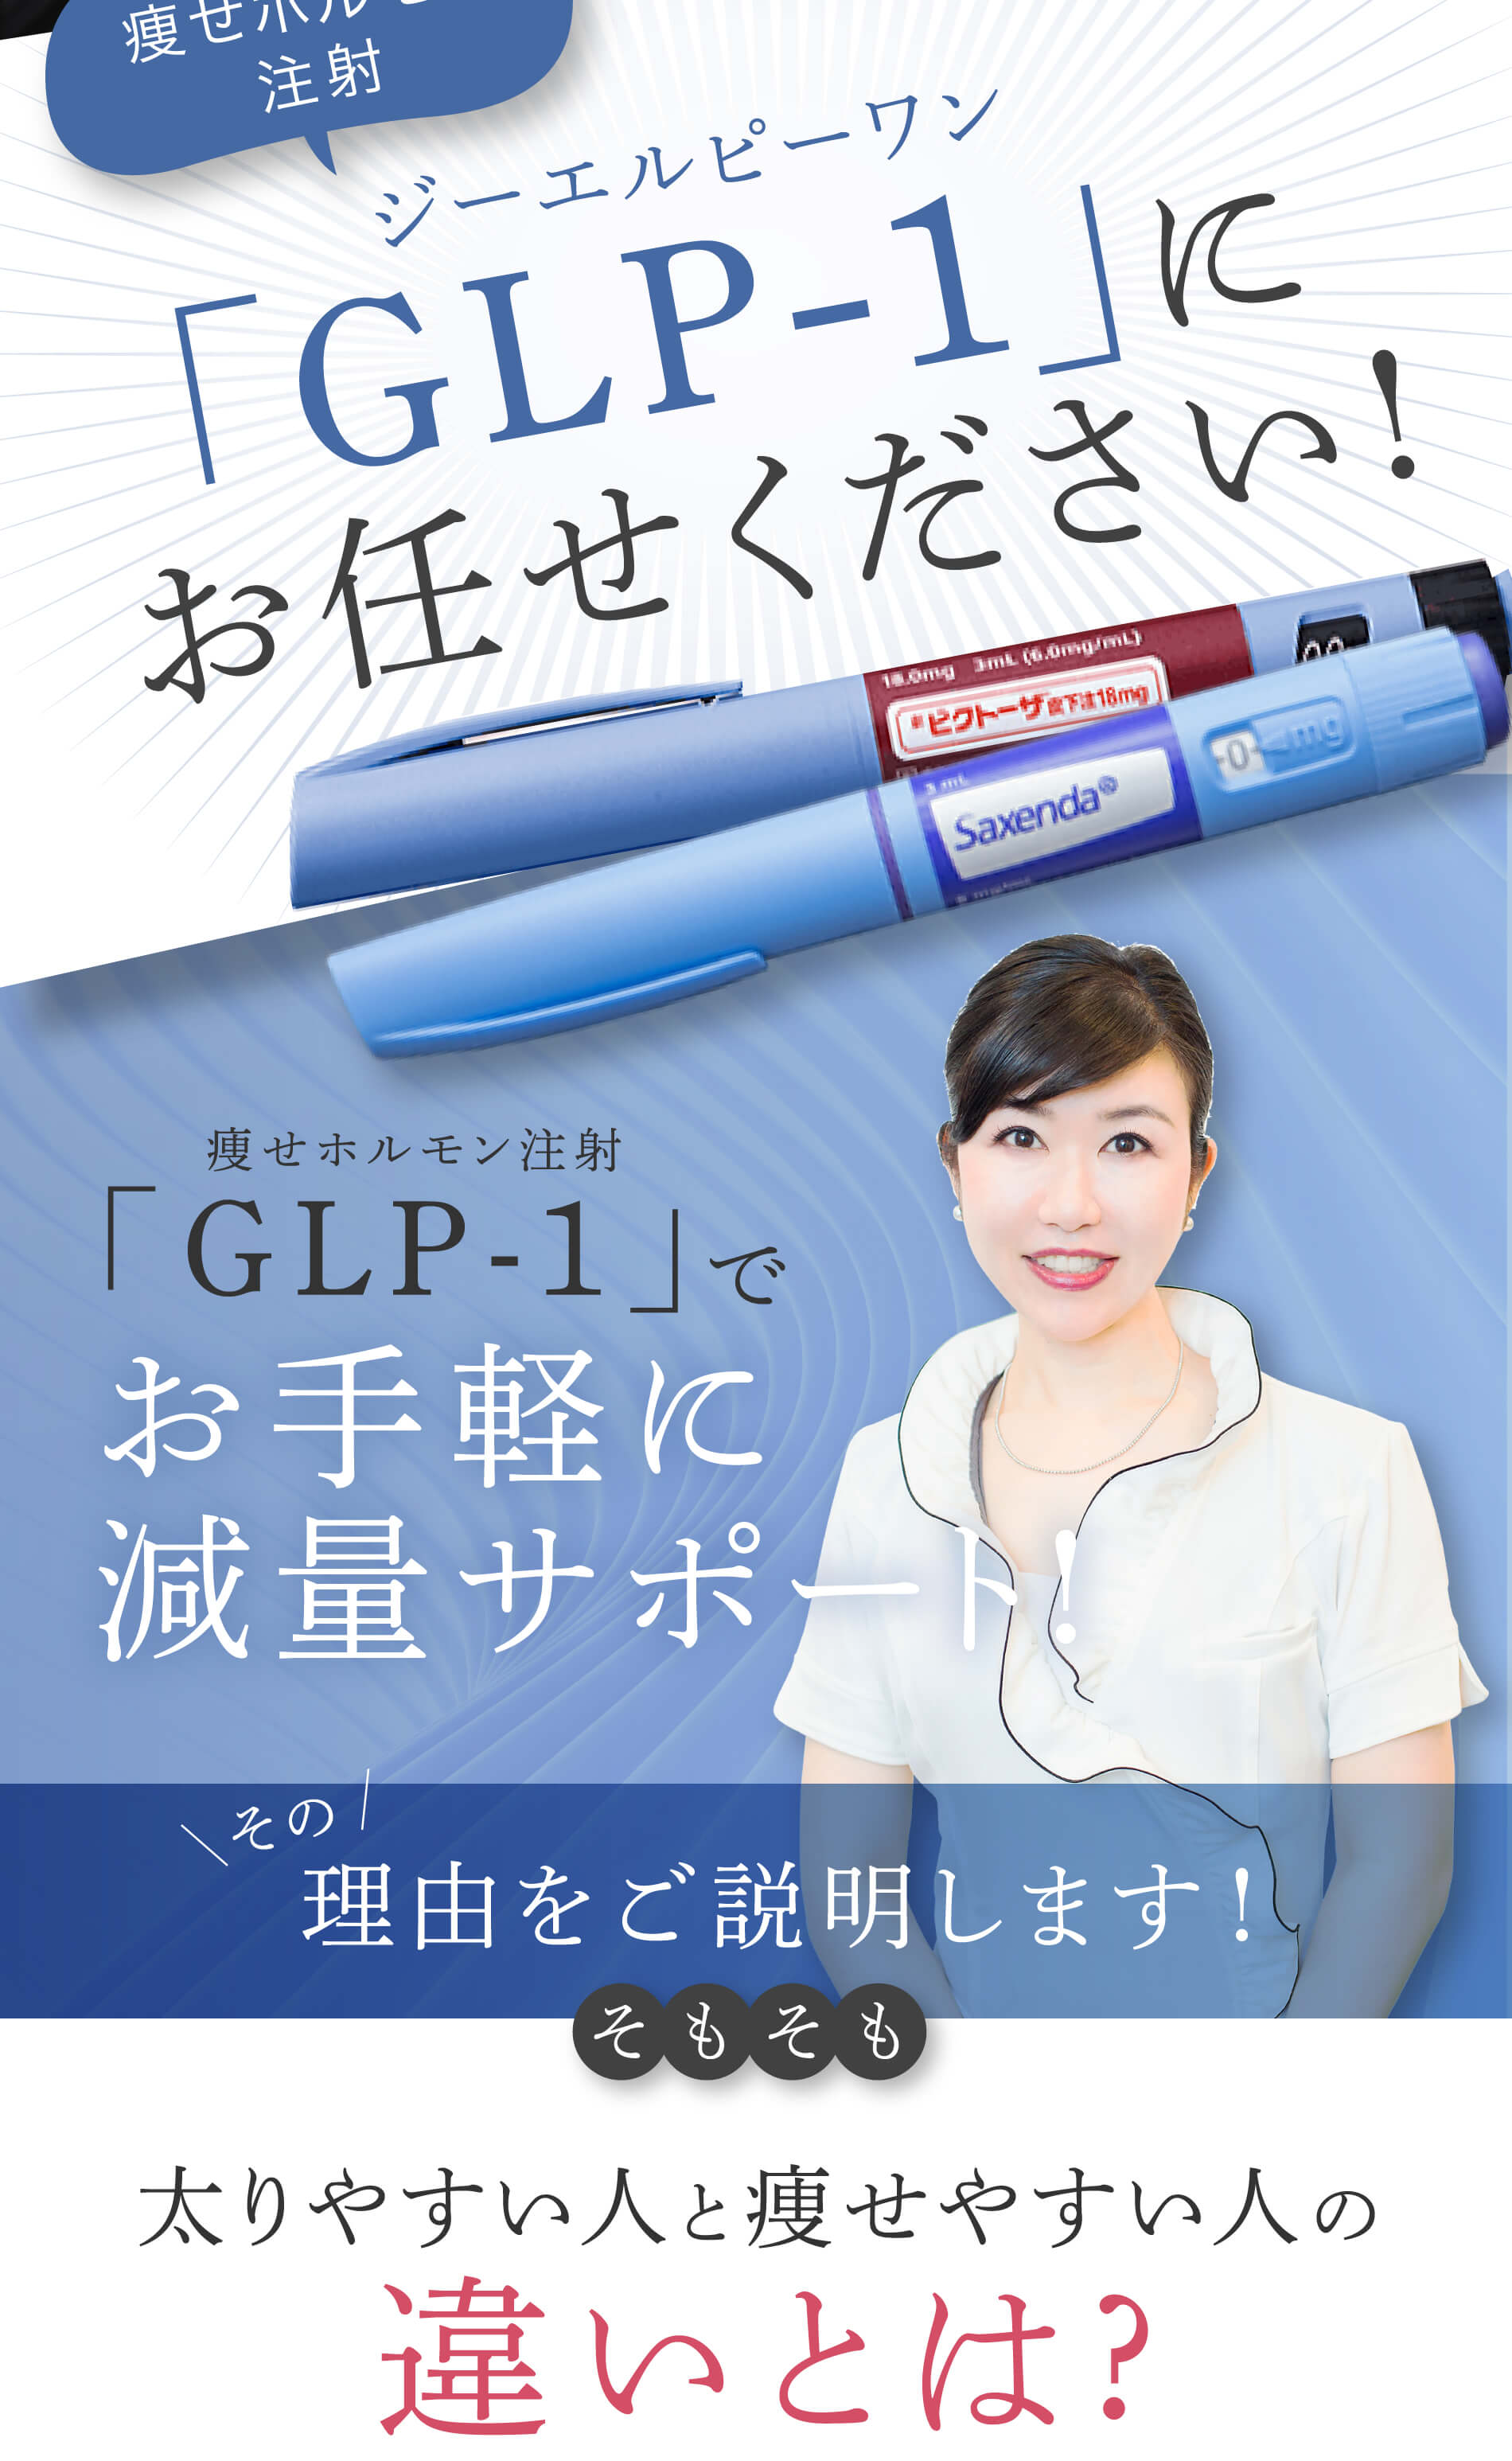 痩せホルモン注射ジーエルピーワン「GLP-1」にお任せください!痩せホルモン注射「GLP-1」でお手軽に減量サポート!その理由をご説明します！そもそも太りやすい人と痩せやすい人の違いとは?